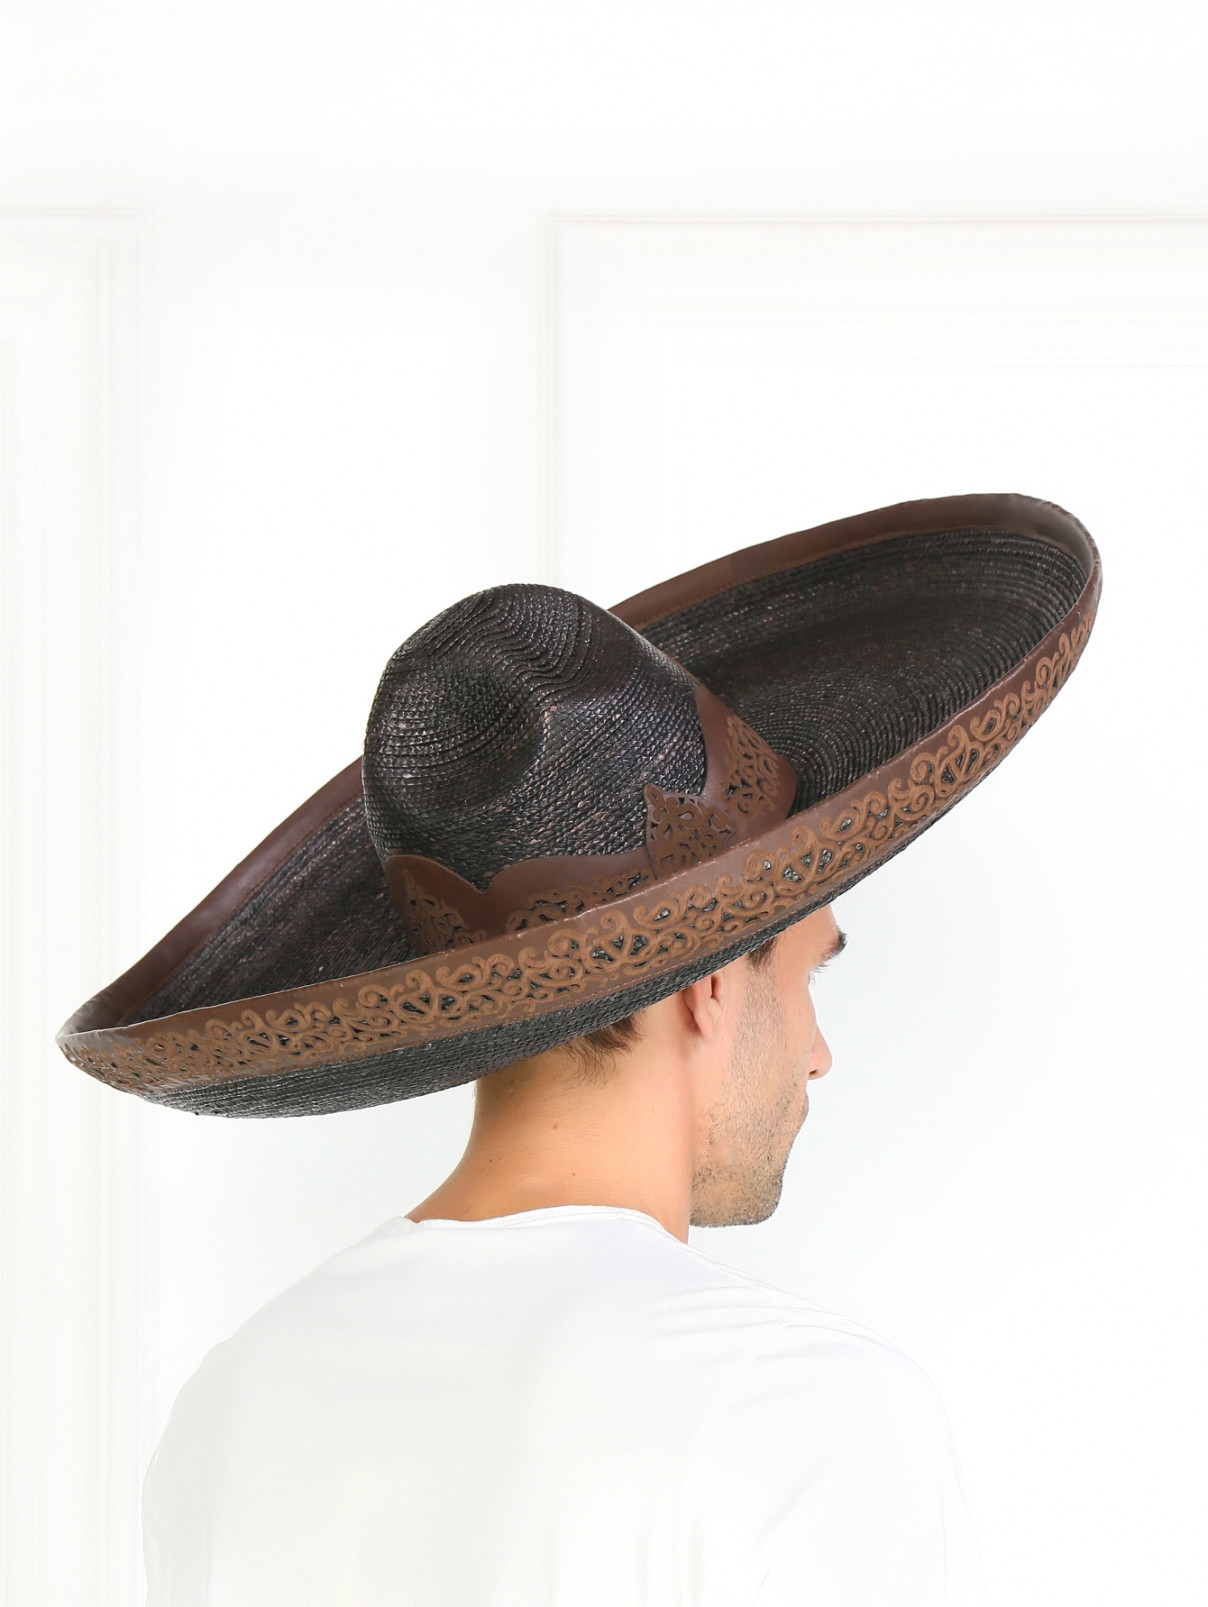 Шляпа с контрастной вставкой Etro  –  Модель Общий вид  – Цвет:  Коричневый